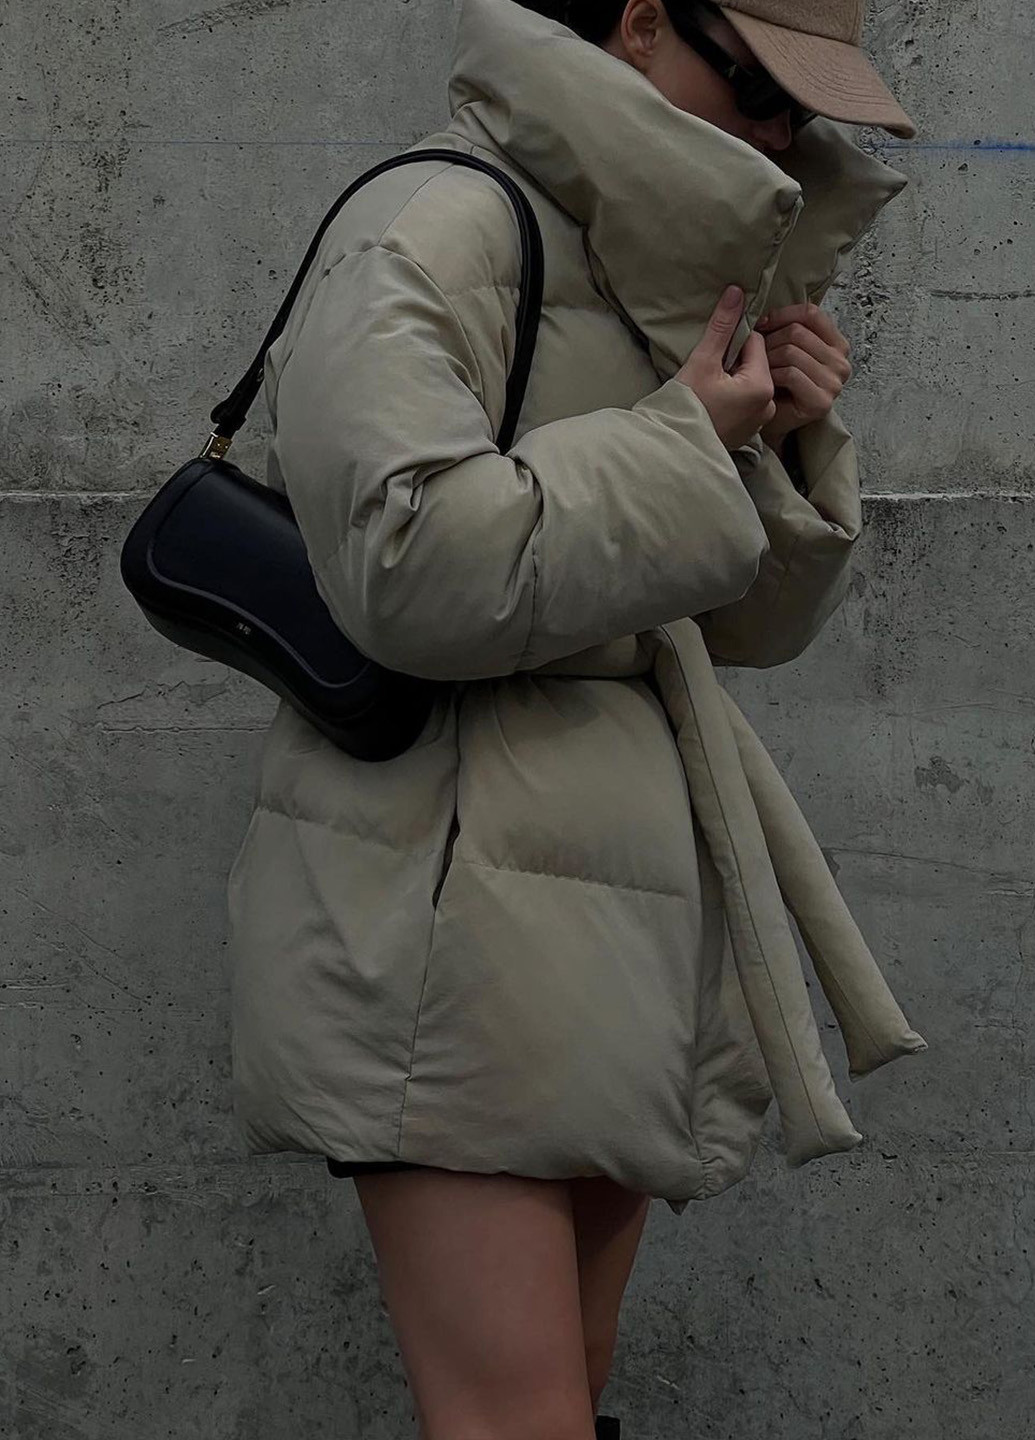 Бежева зимня куртка жіноча зимова пуховик на лебединому пуху к-015 бежевий SoulKiss k-015